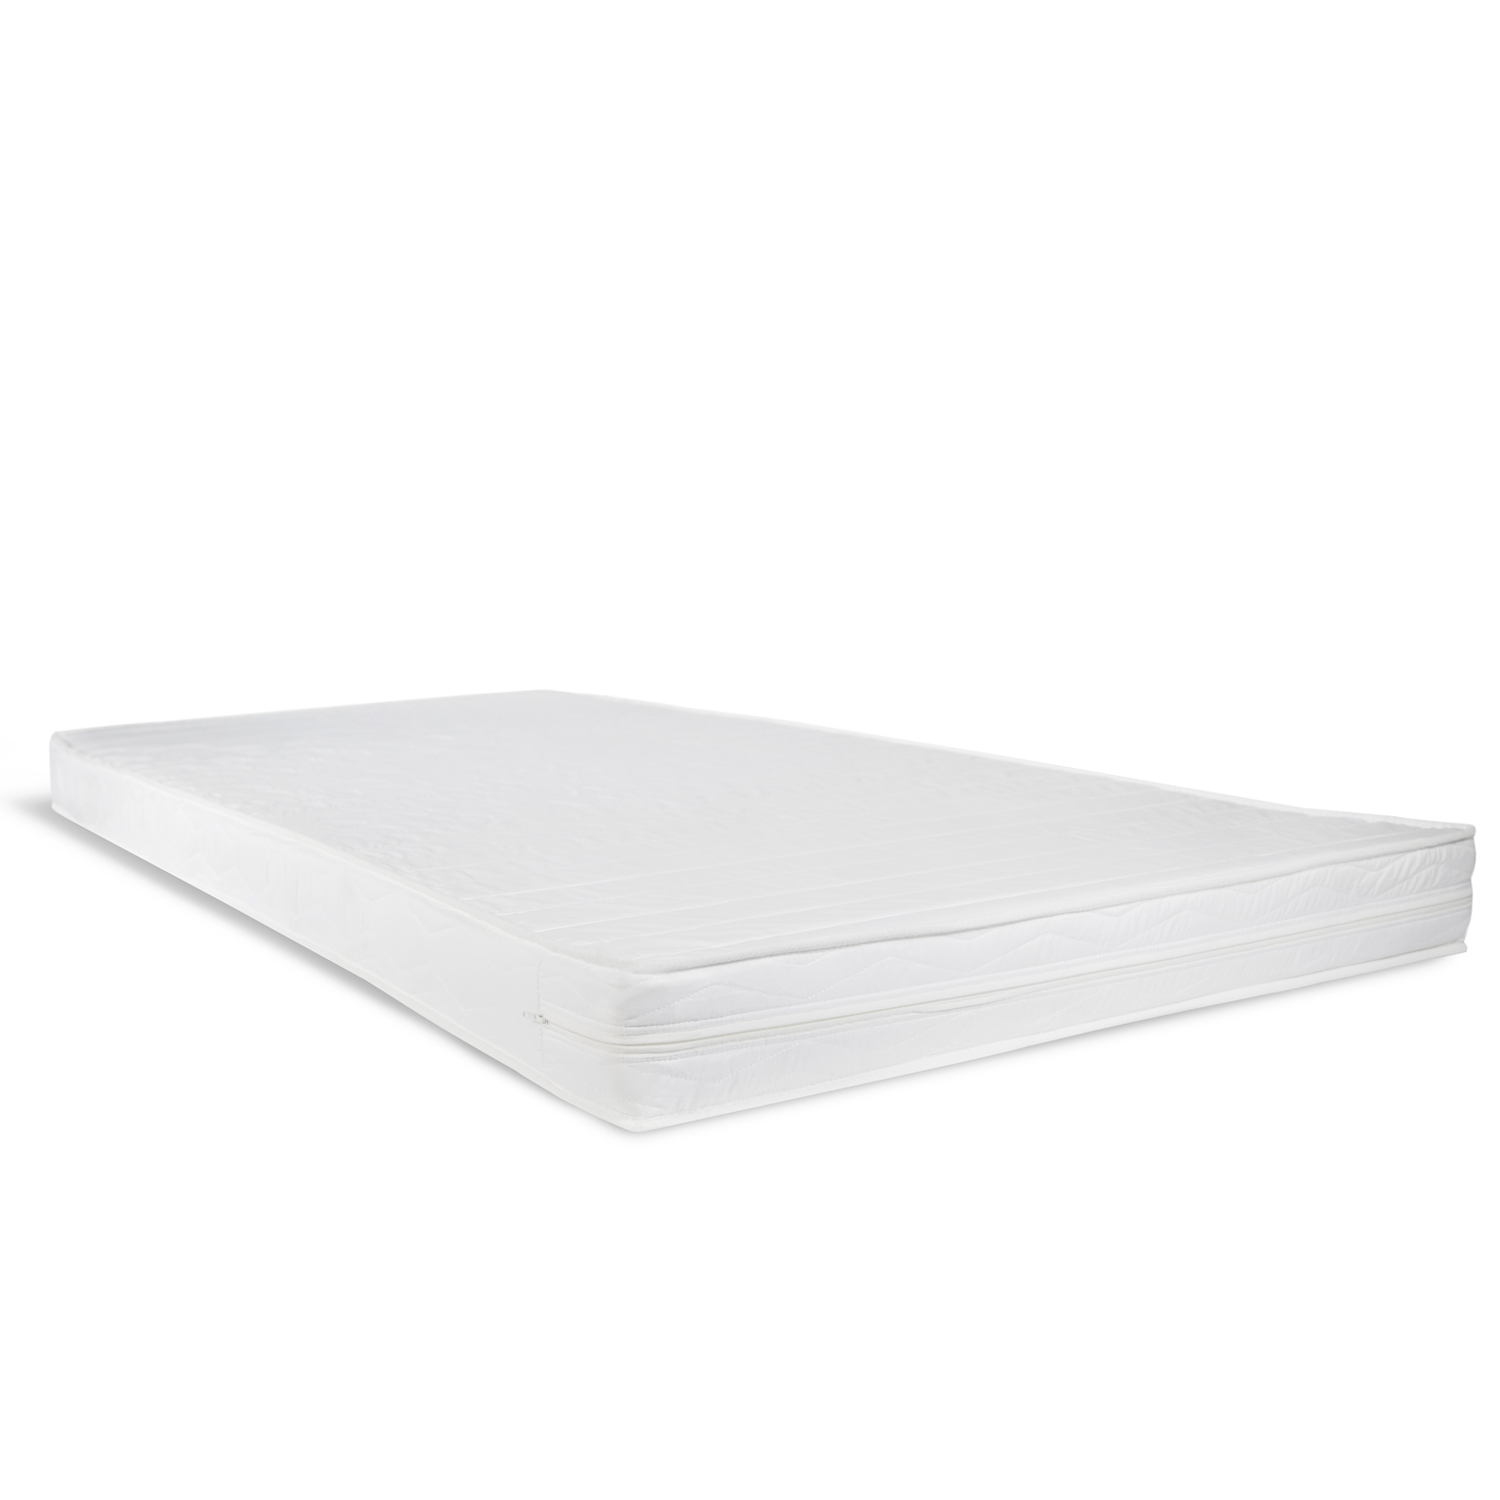 Mattress 140x200 cm h2 mattress roll mattress foam white